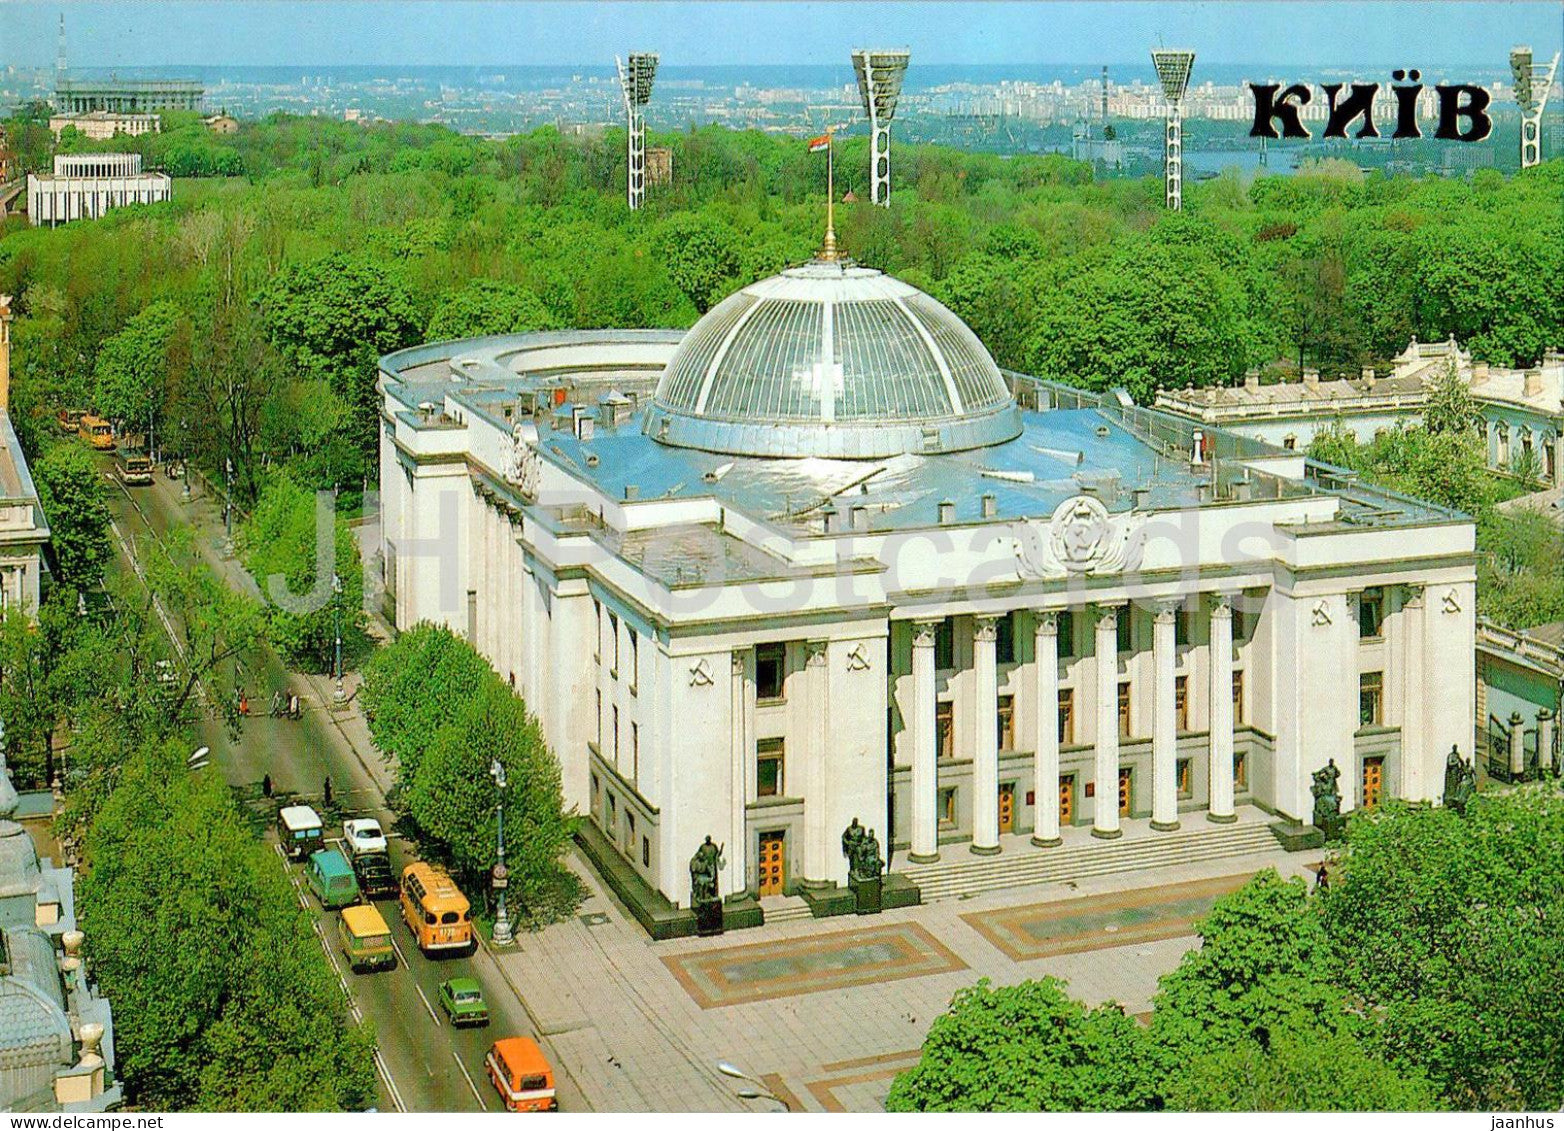 Kyiv - Kiev - Supreme Soviet of the Ukrainian SSR - 1990 - Ukraine USSR - unused - JH Postcards